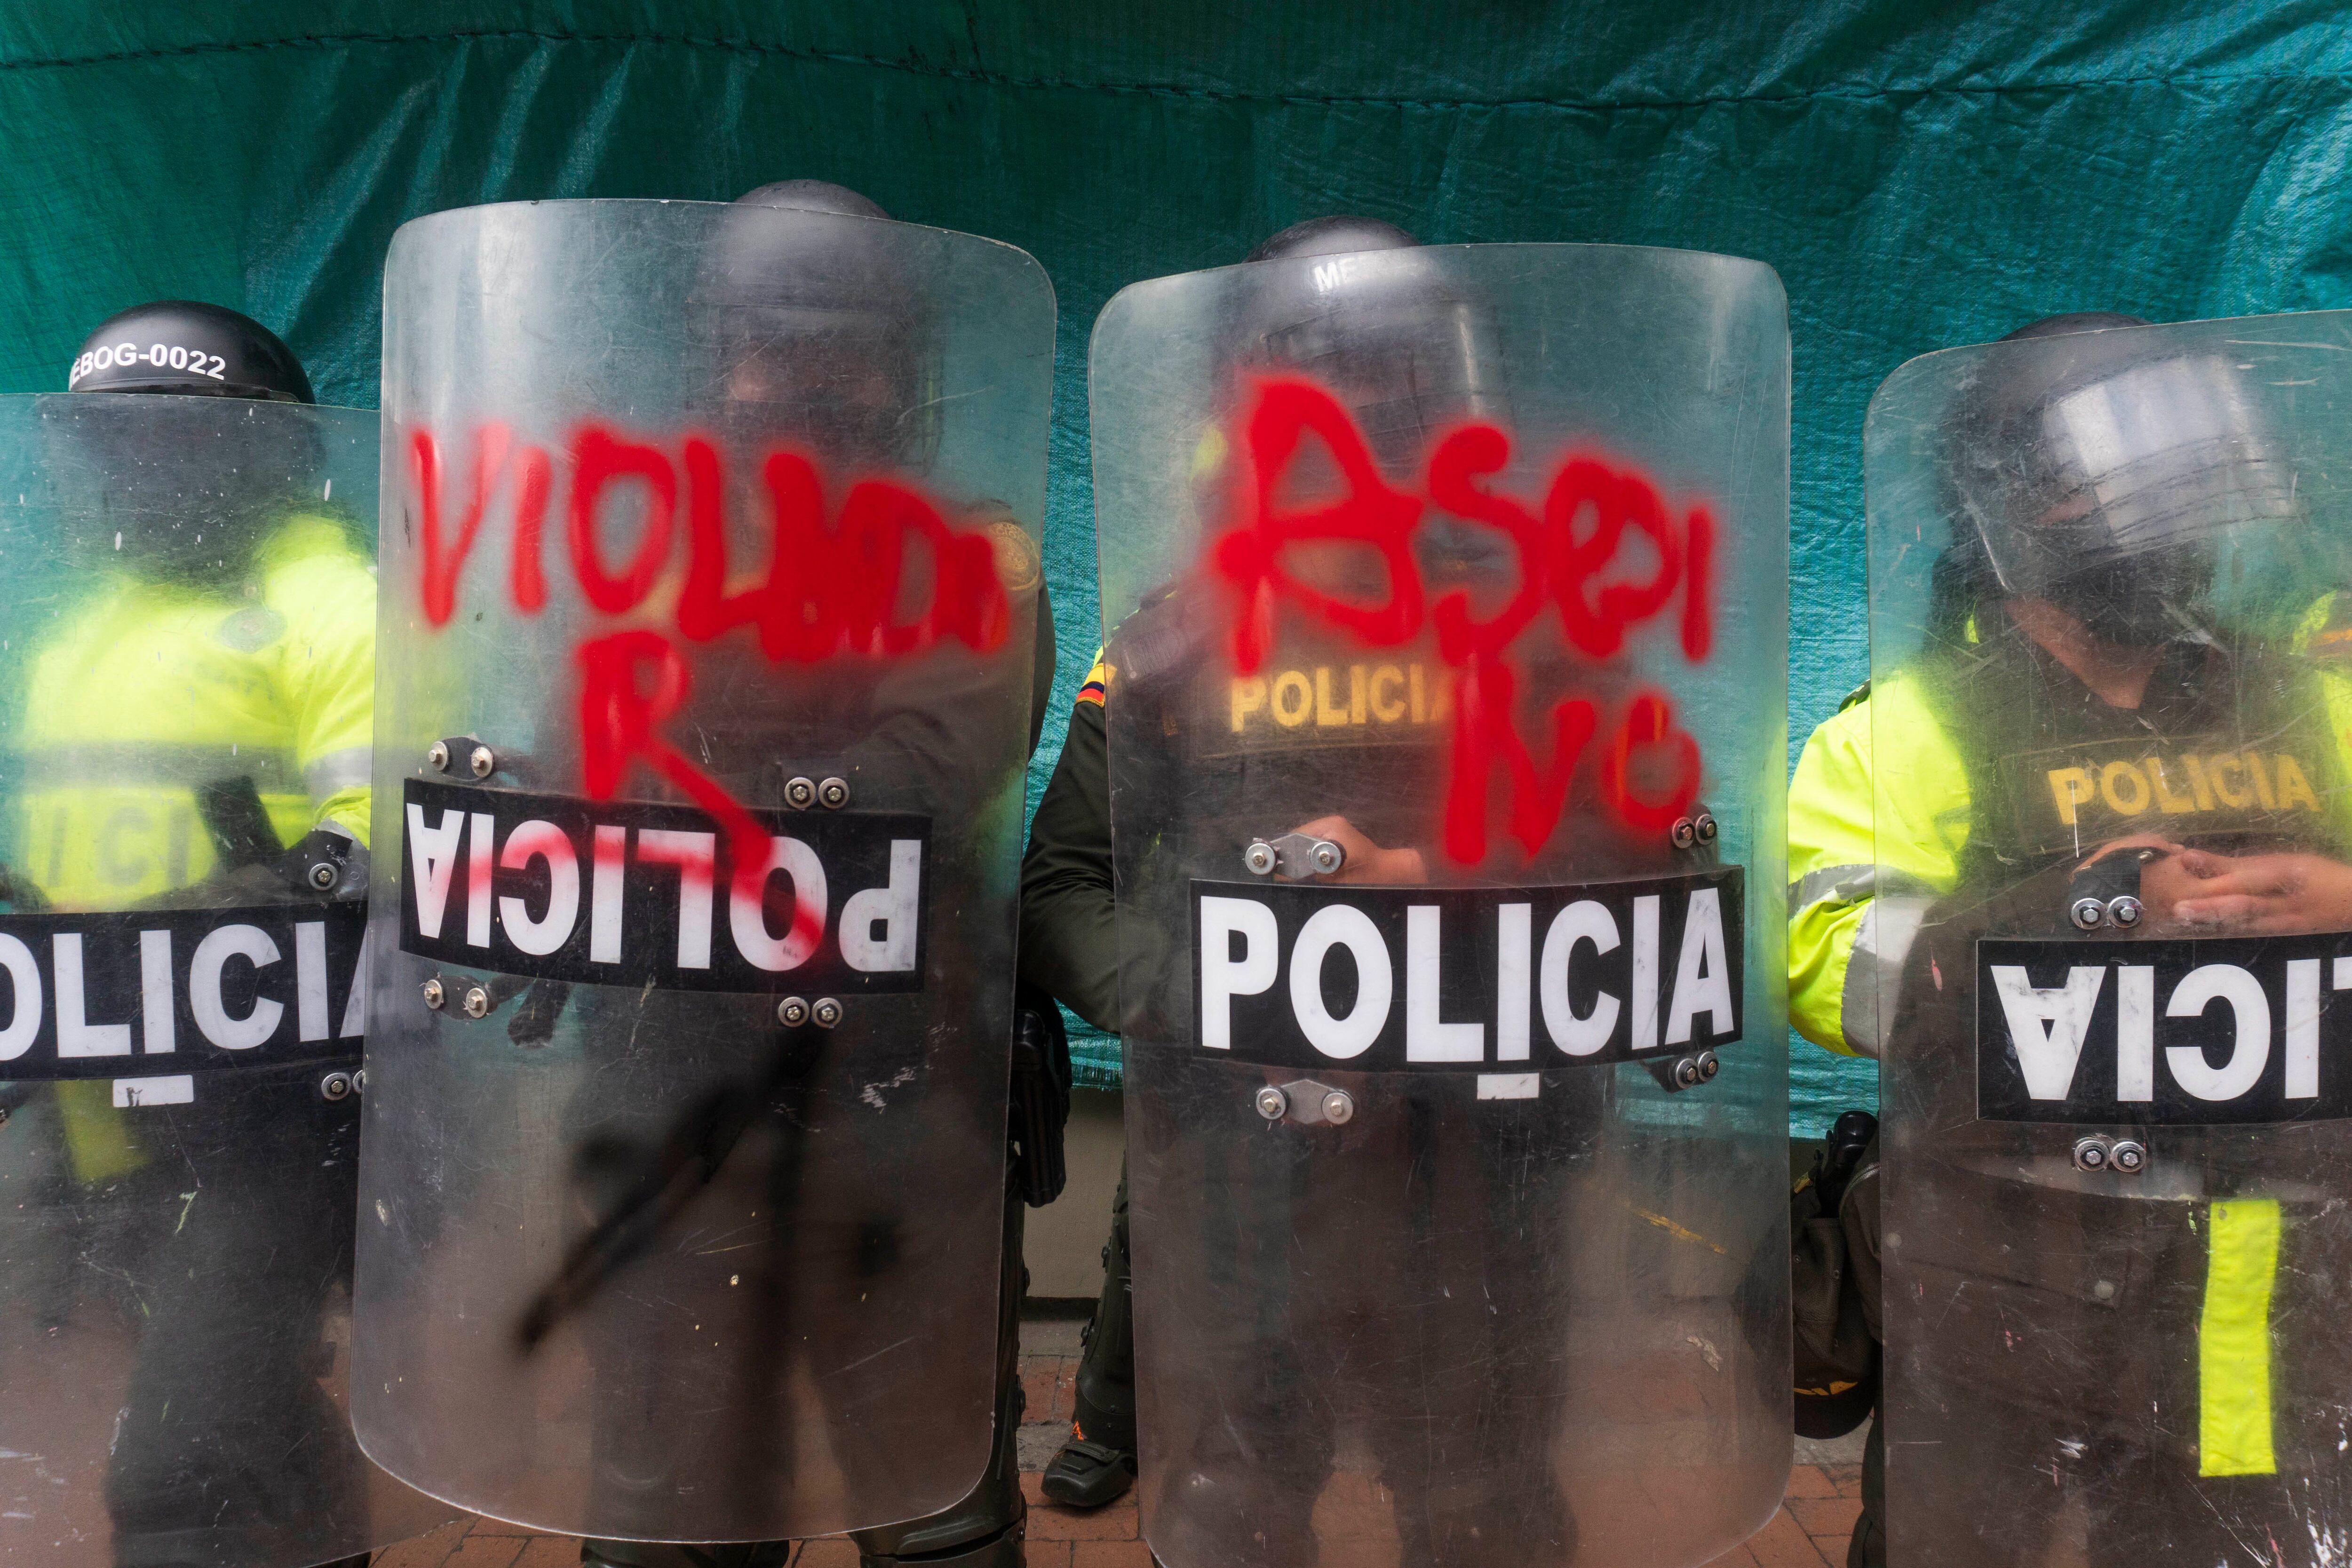 24/09/2020 Manifestación contra la violencia policial en Colombia. La labor del Escuadrón Móvil Antidisturbios (ESMAD), a la que se ha denunciado por supuestas agresiones sexuales en sus centros durante las protestas, fue duramente criticada por el Tribunal Supremo. POLITICA SUDAMÉRICA COLOMBIA LATINOAMÉRICA INTERNACIONAL DANIEL GARZON HERAZO / ZUMA PRESS / CONTACTOPHOTO 